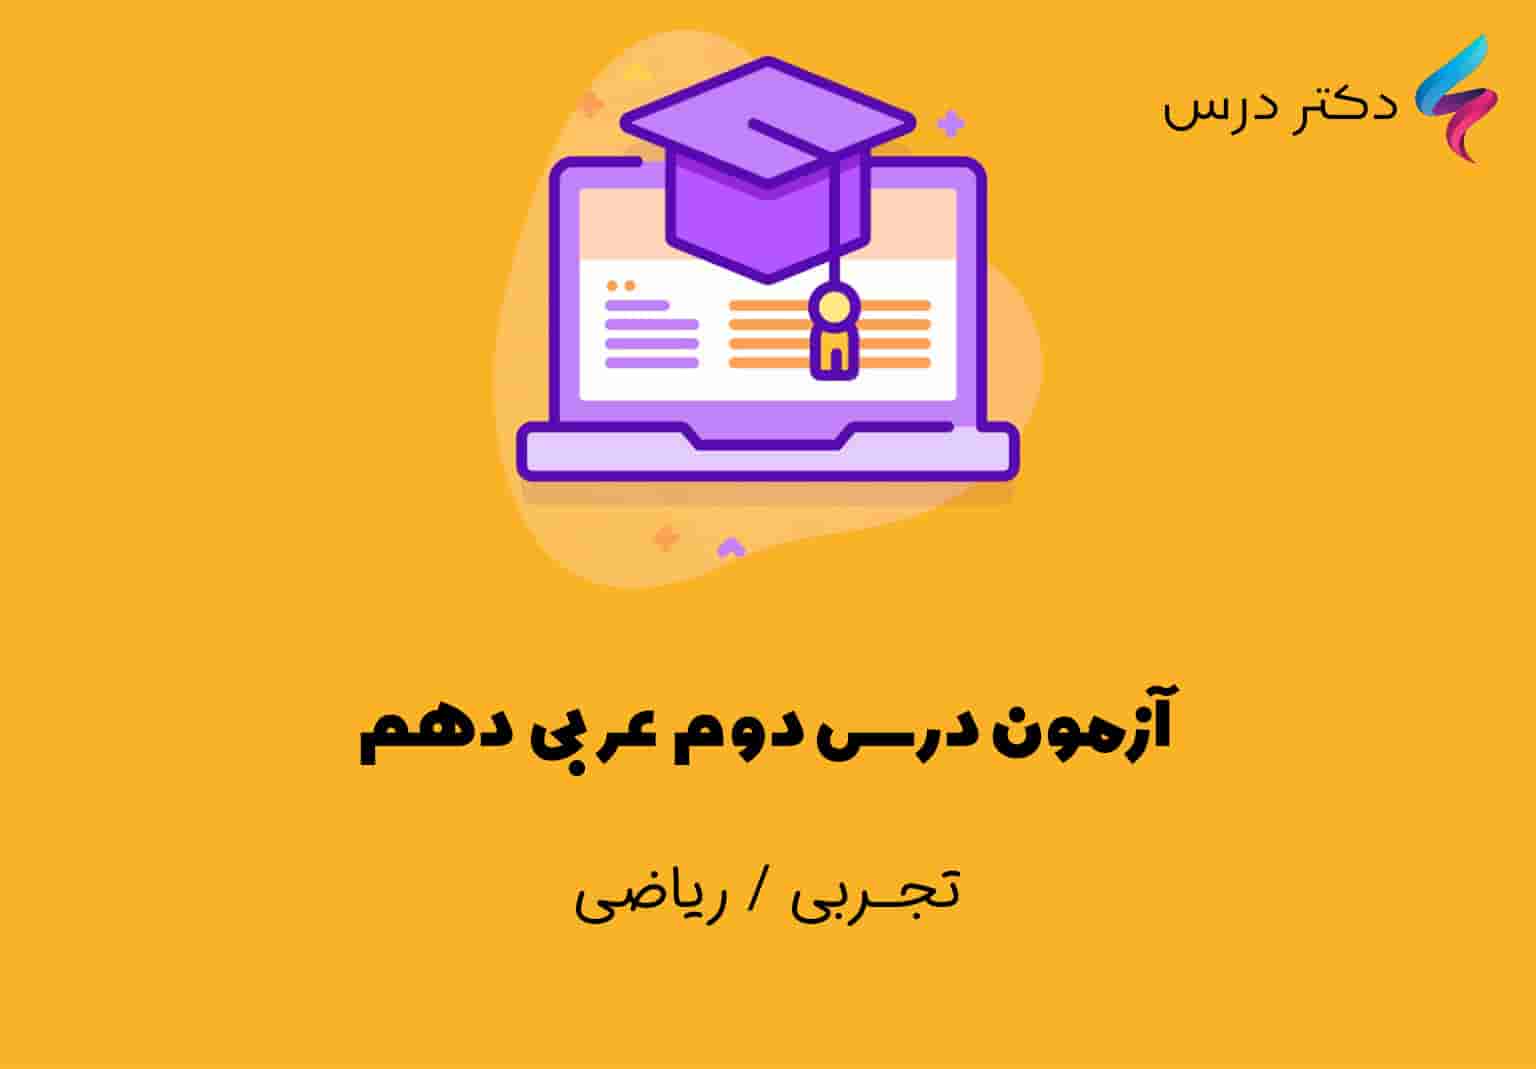 آزمون درس دوم عربی دهم